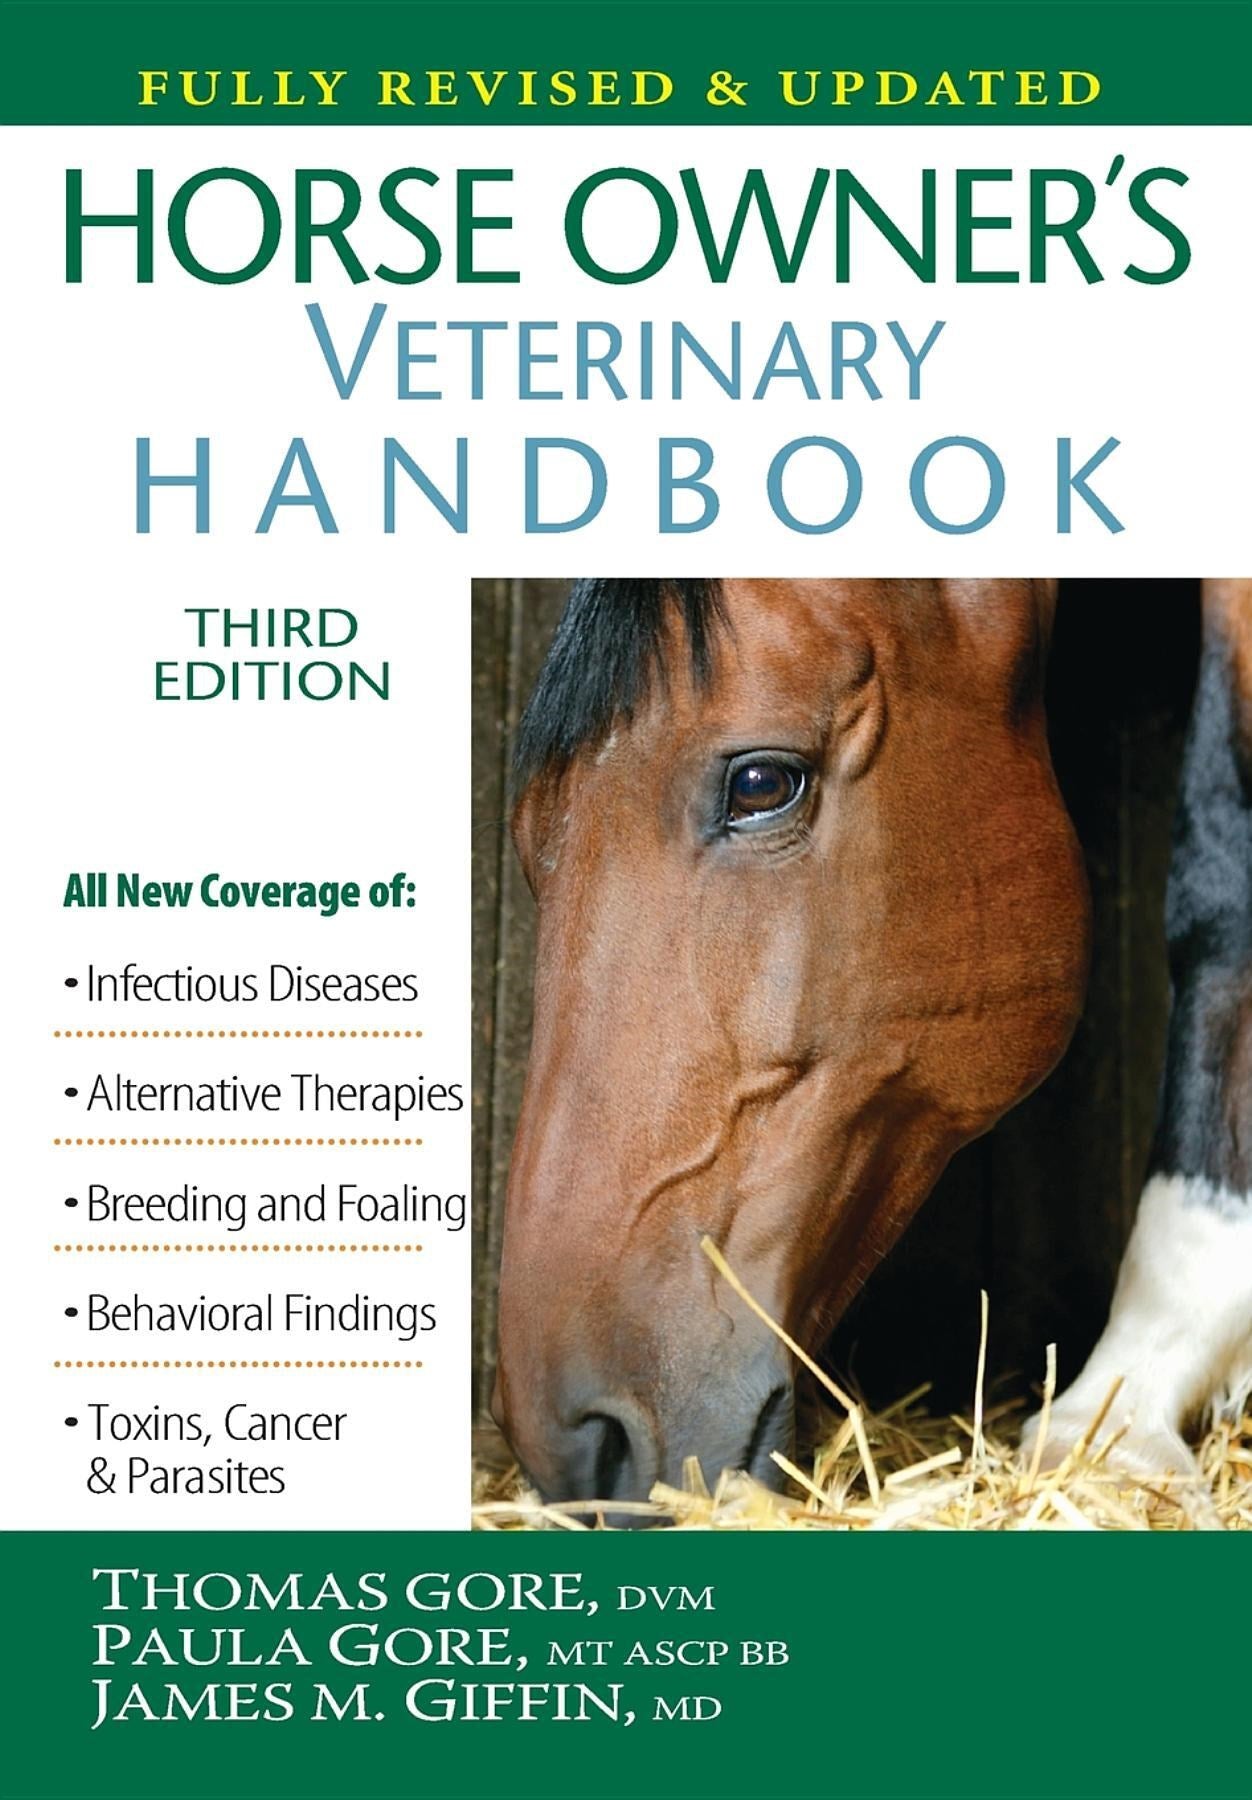 Horse Owner's Veterinary Handbook  (3rd Edition)